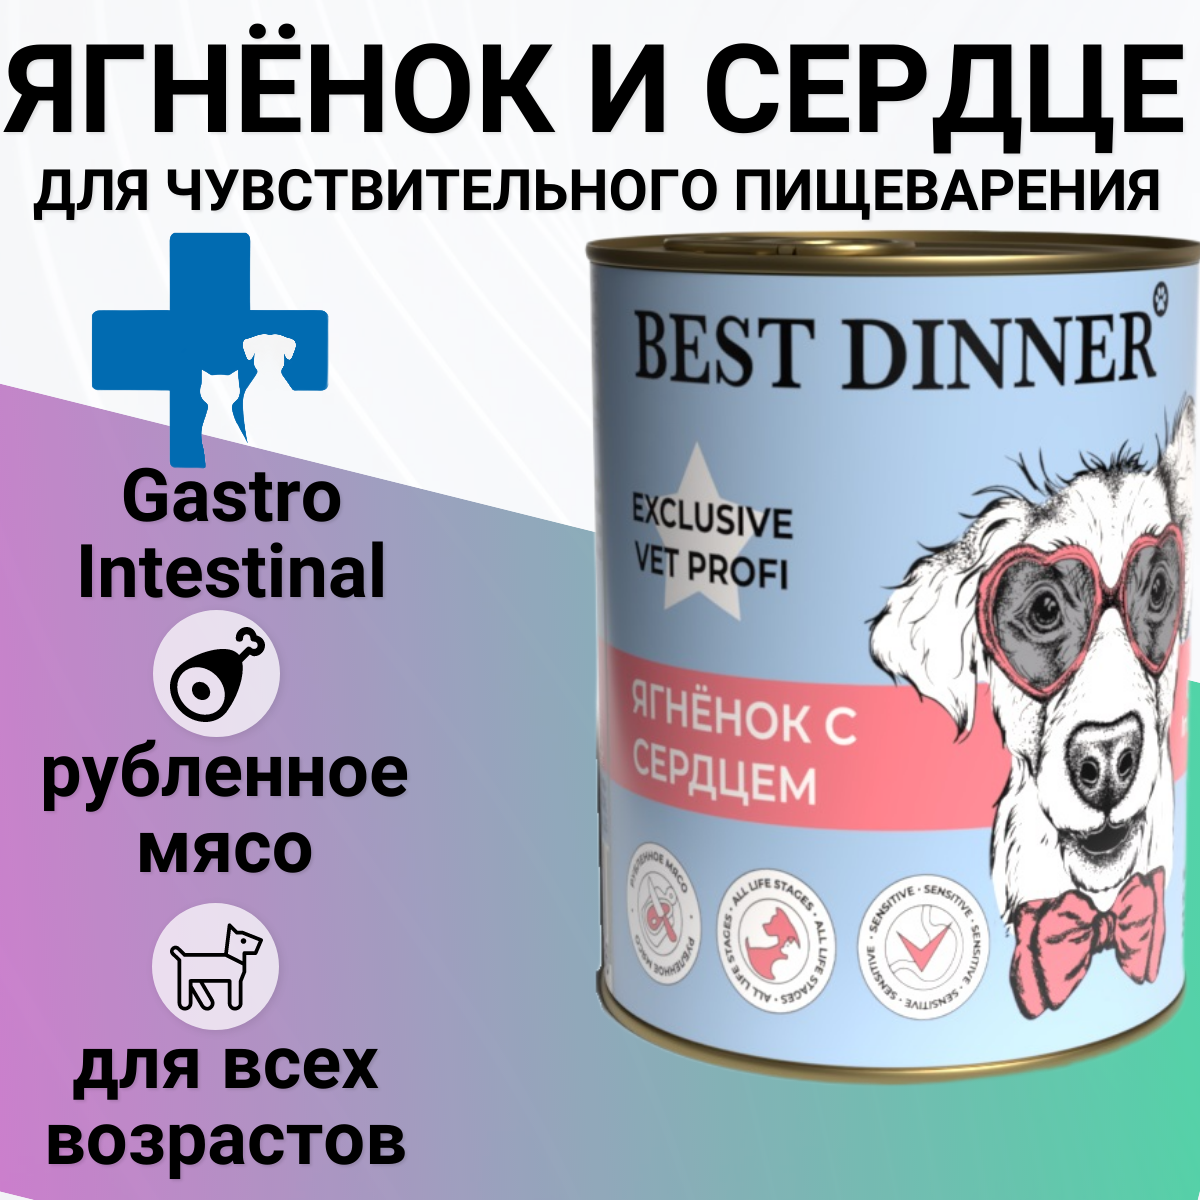 Влажный корм BEST DINNER 340гр Для любых собак, Gastro Intestinal Ягненок с сердцем , профилактика ЖКТ